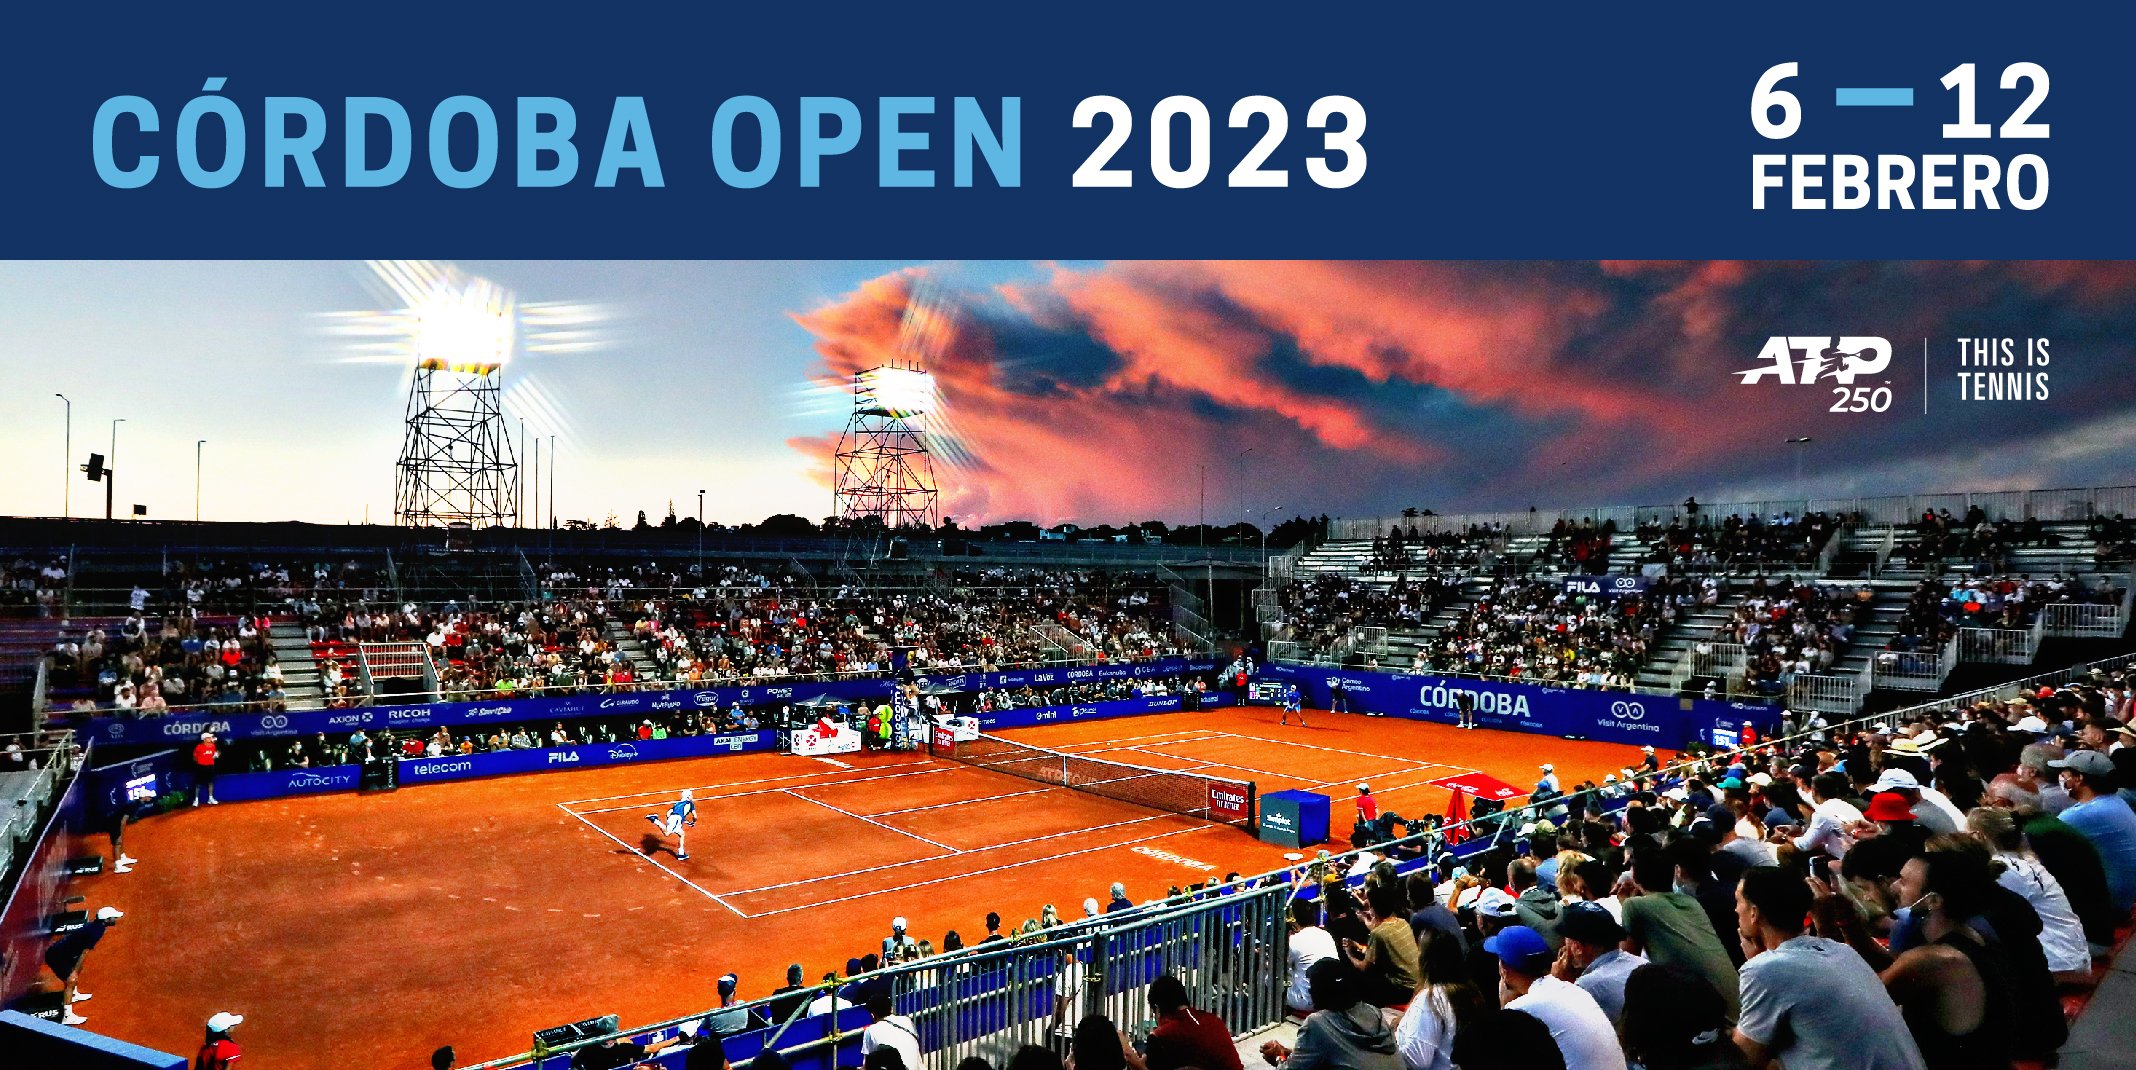 Fecha confirmada para el Córdoba Open 2023 | Canal Showsport